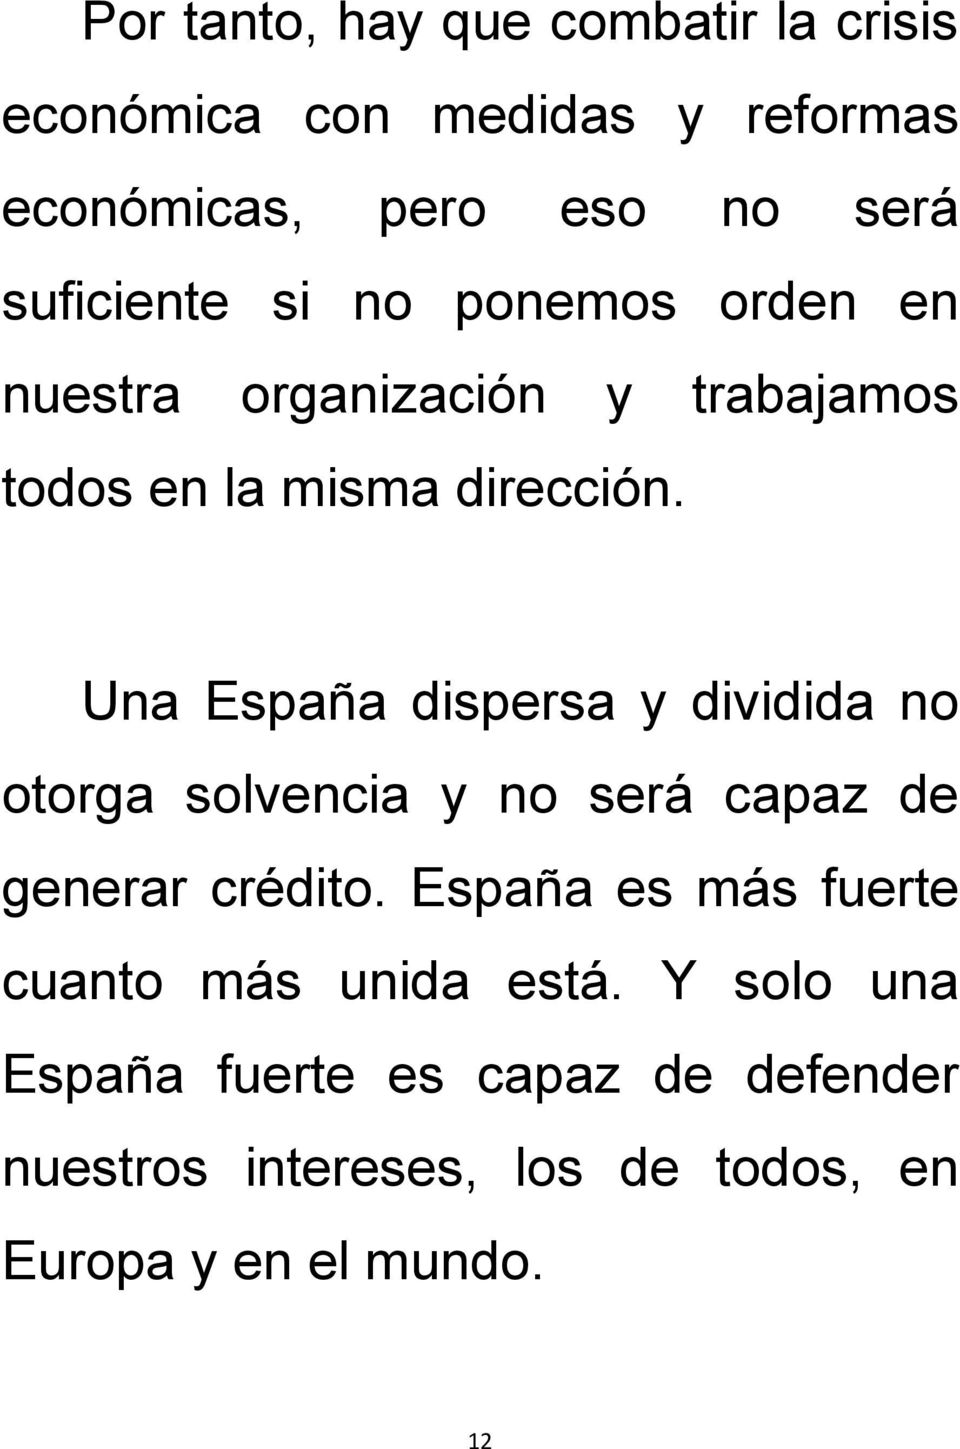 Una España dispersa y dividida no otorga solvencia y no será capaz de generar crédito.